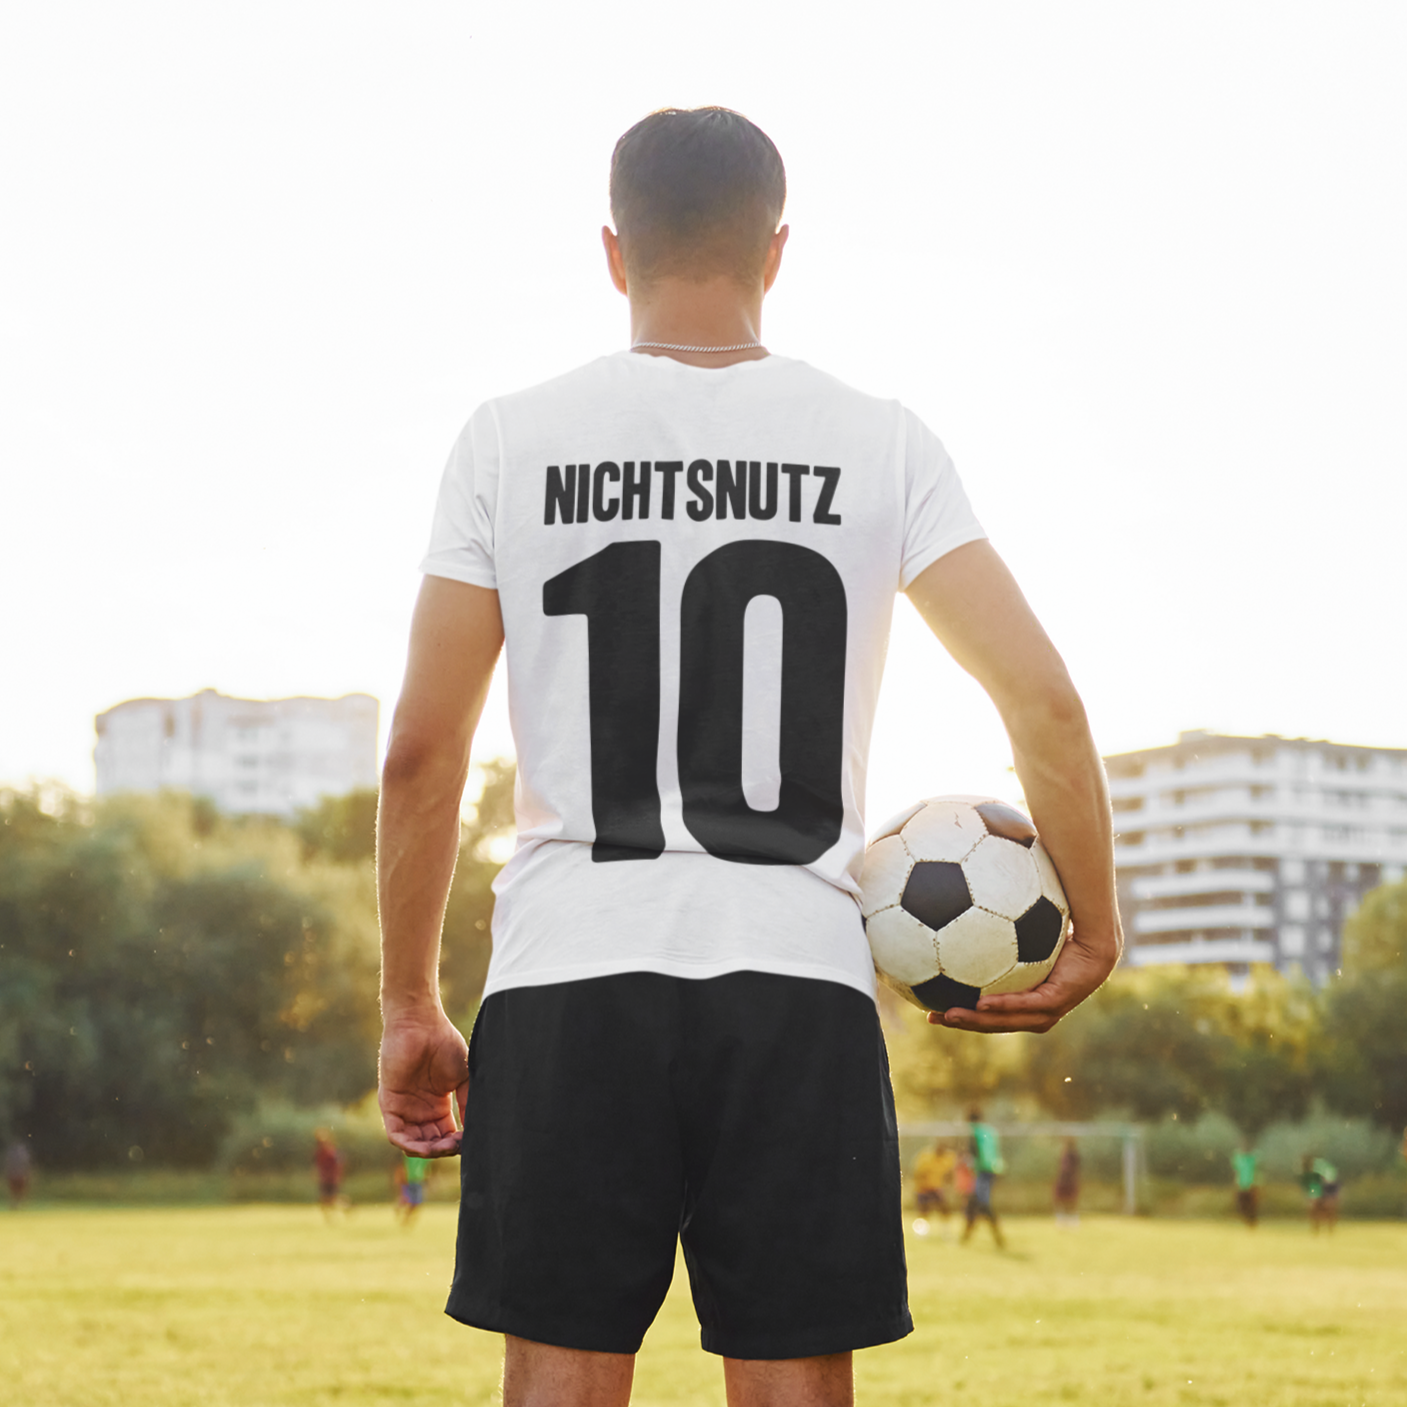 Fussball Trikot aufwärmt tshirts Mannschaftsshirts tshirt mit name und Nummer Vereinslogo bedrucken lassen teamshirts